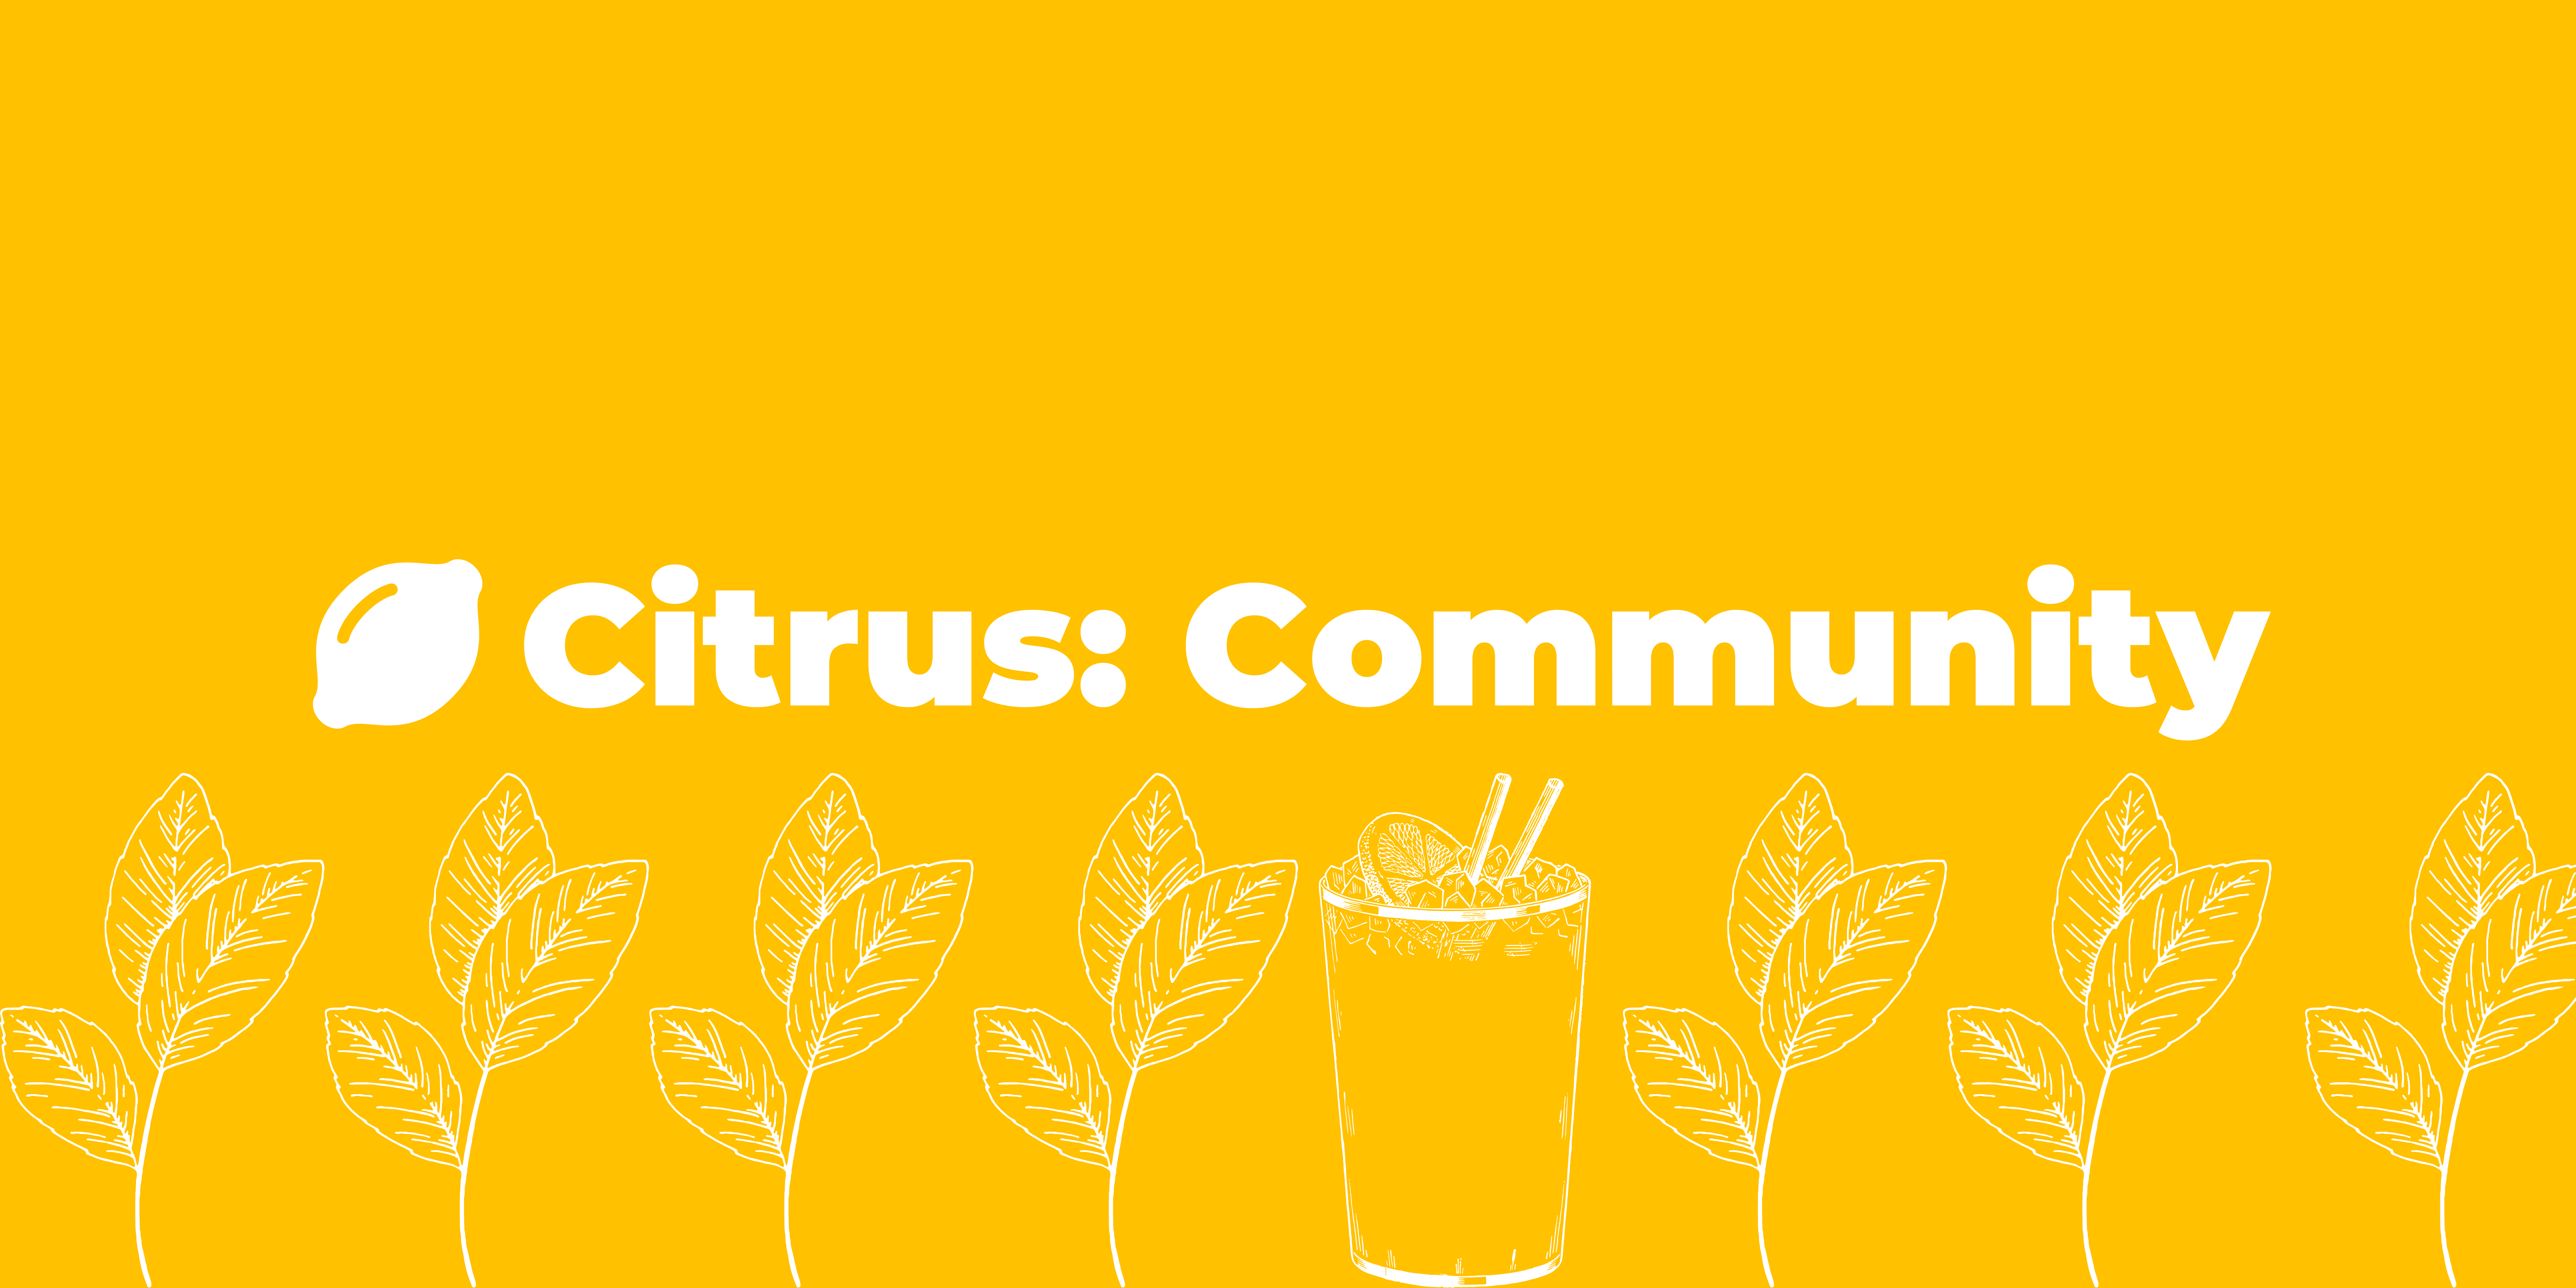 Citrus: Community